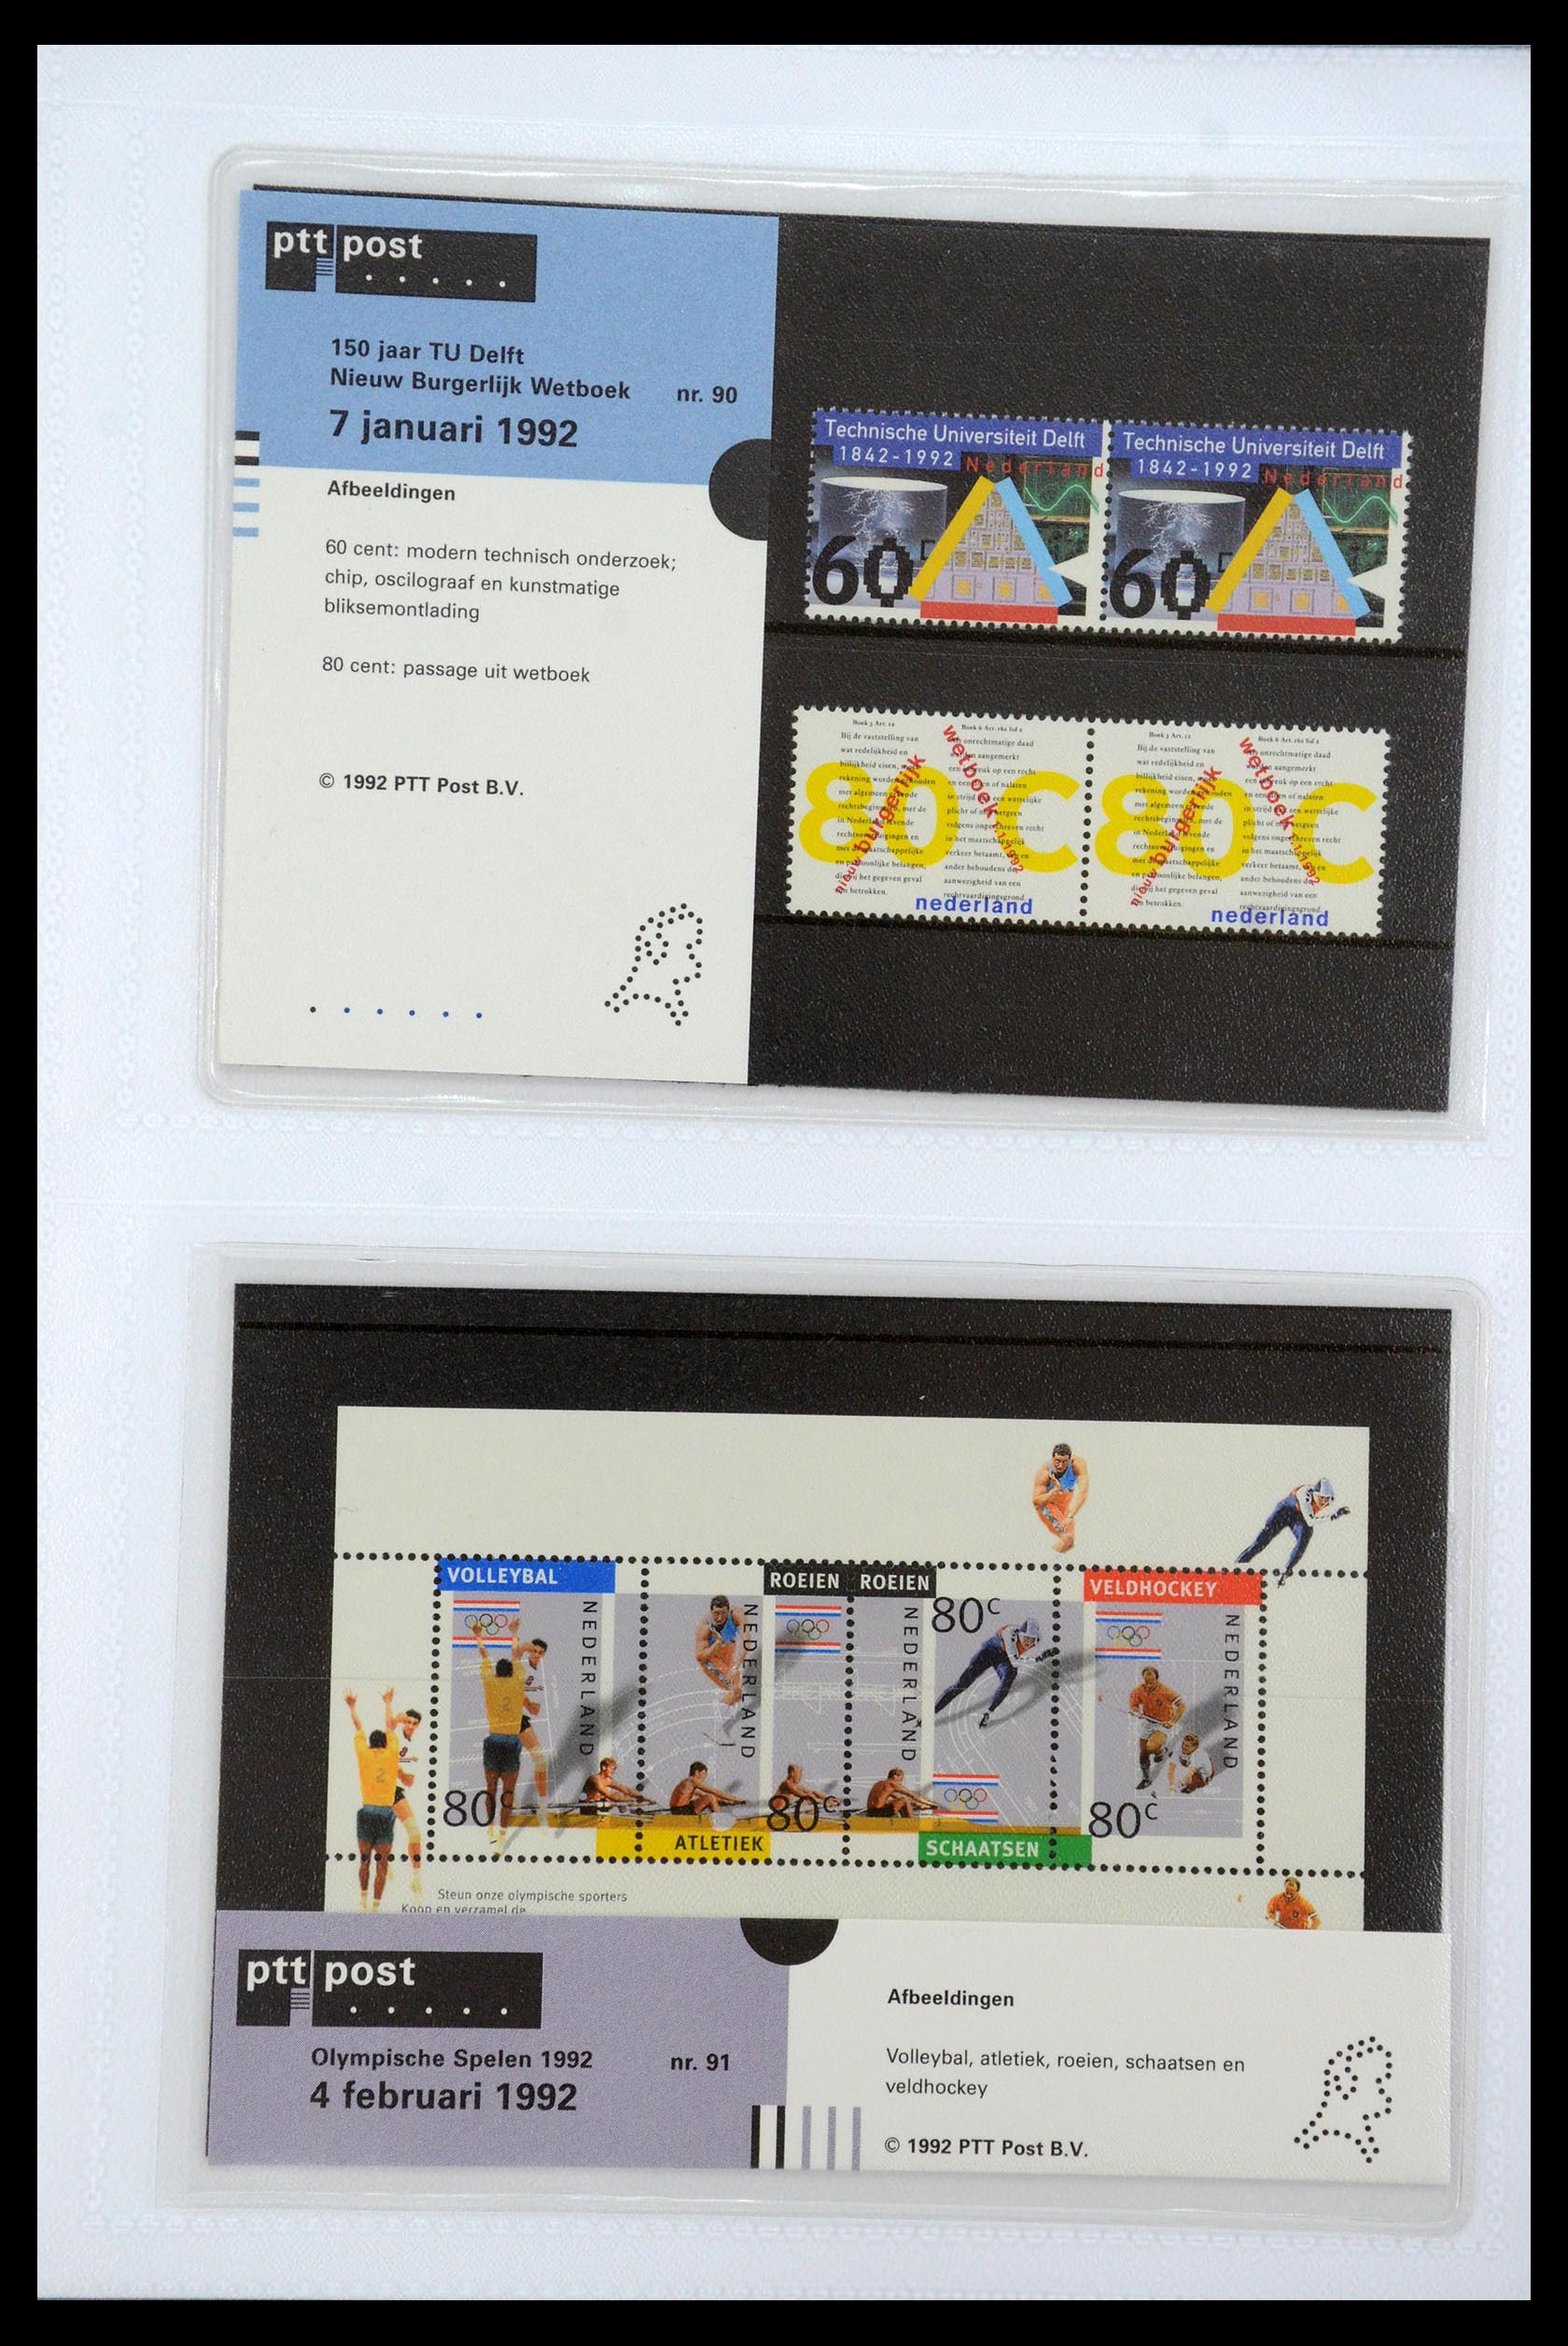 35947 046 - Stamp Collection 35947 Netherlands PTT presentation packs 1982-2019!